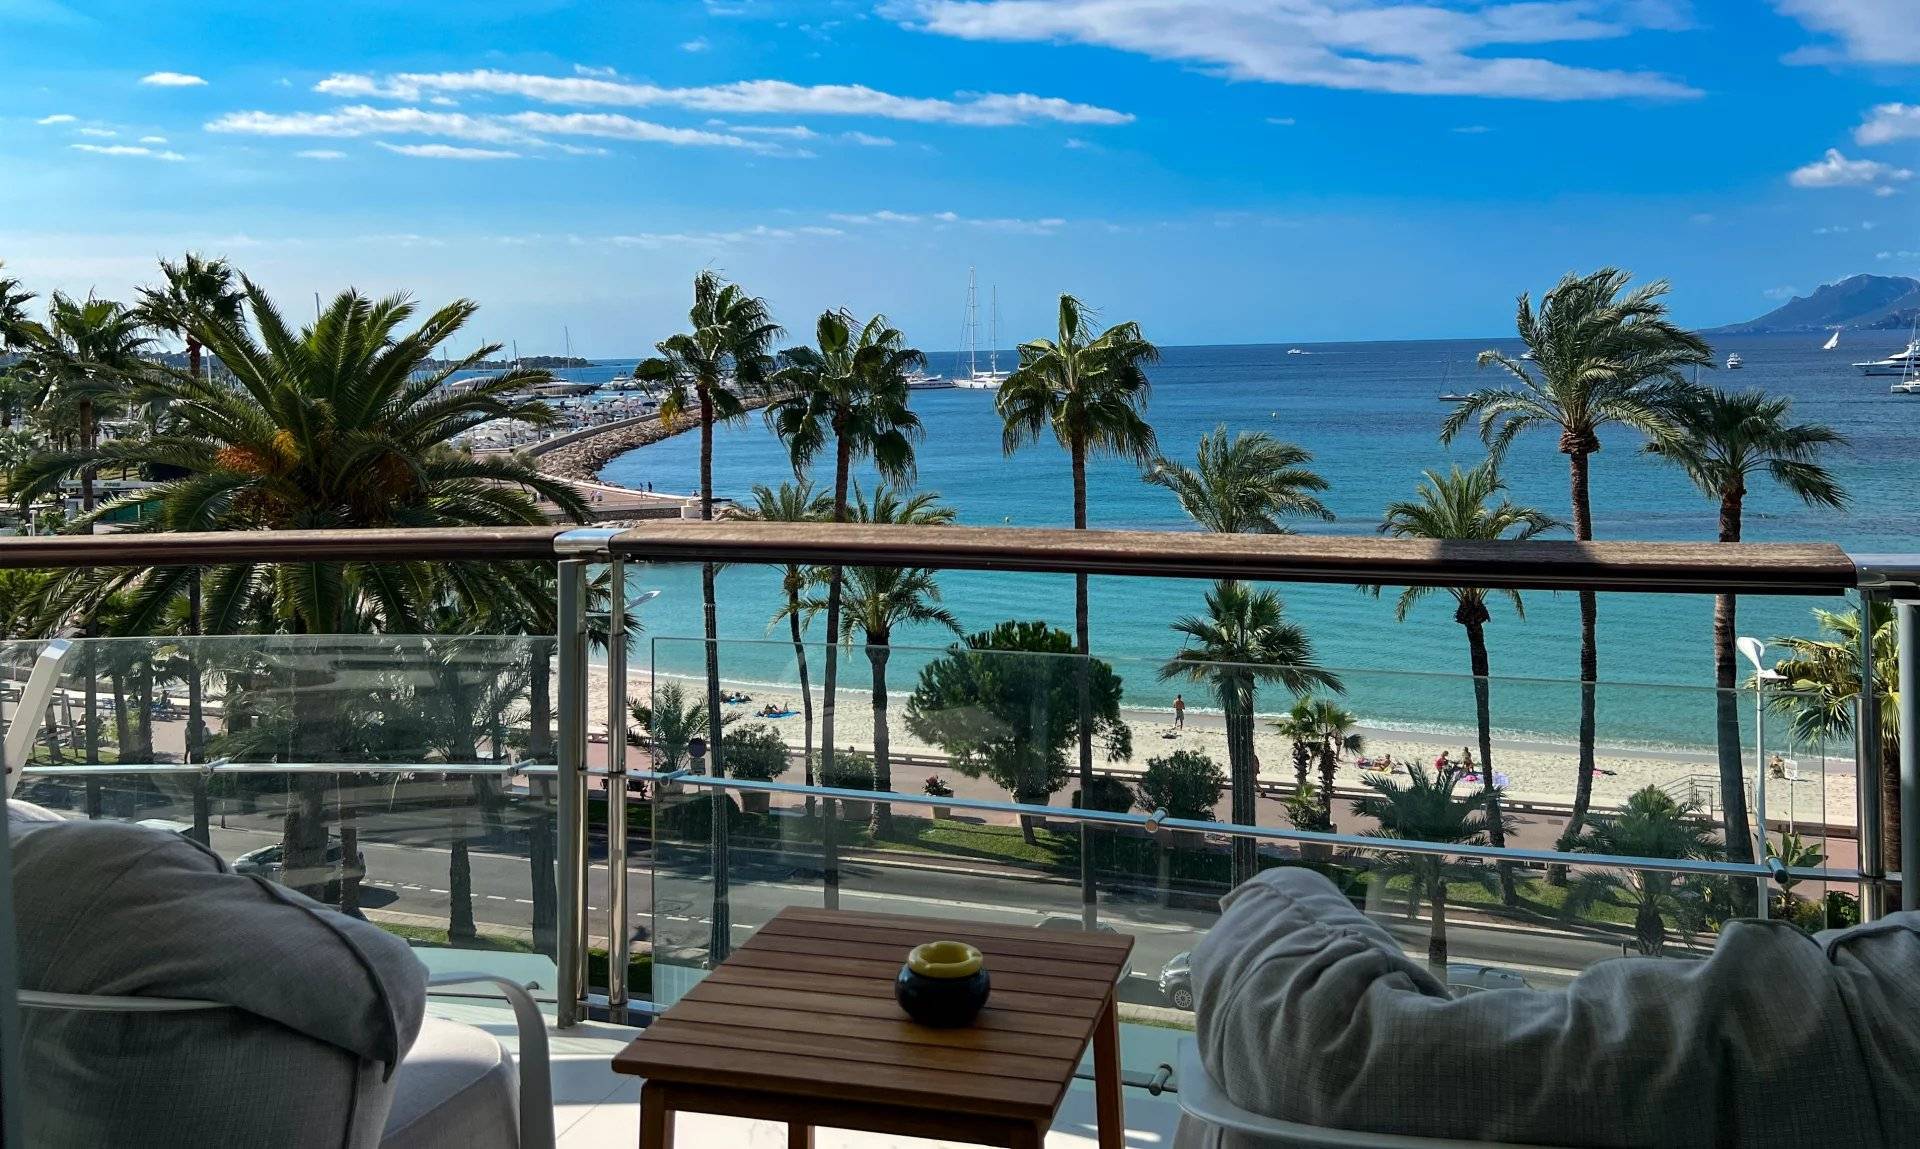 Vente Appartement 3 Pièces à Cannes (06400) - SP Real Estate